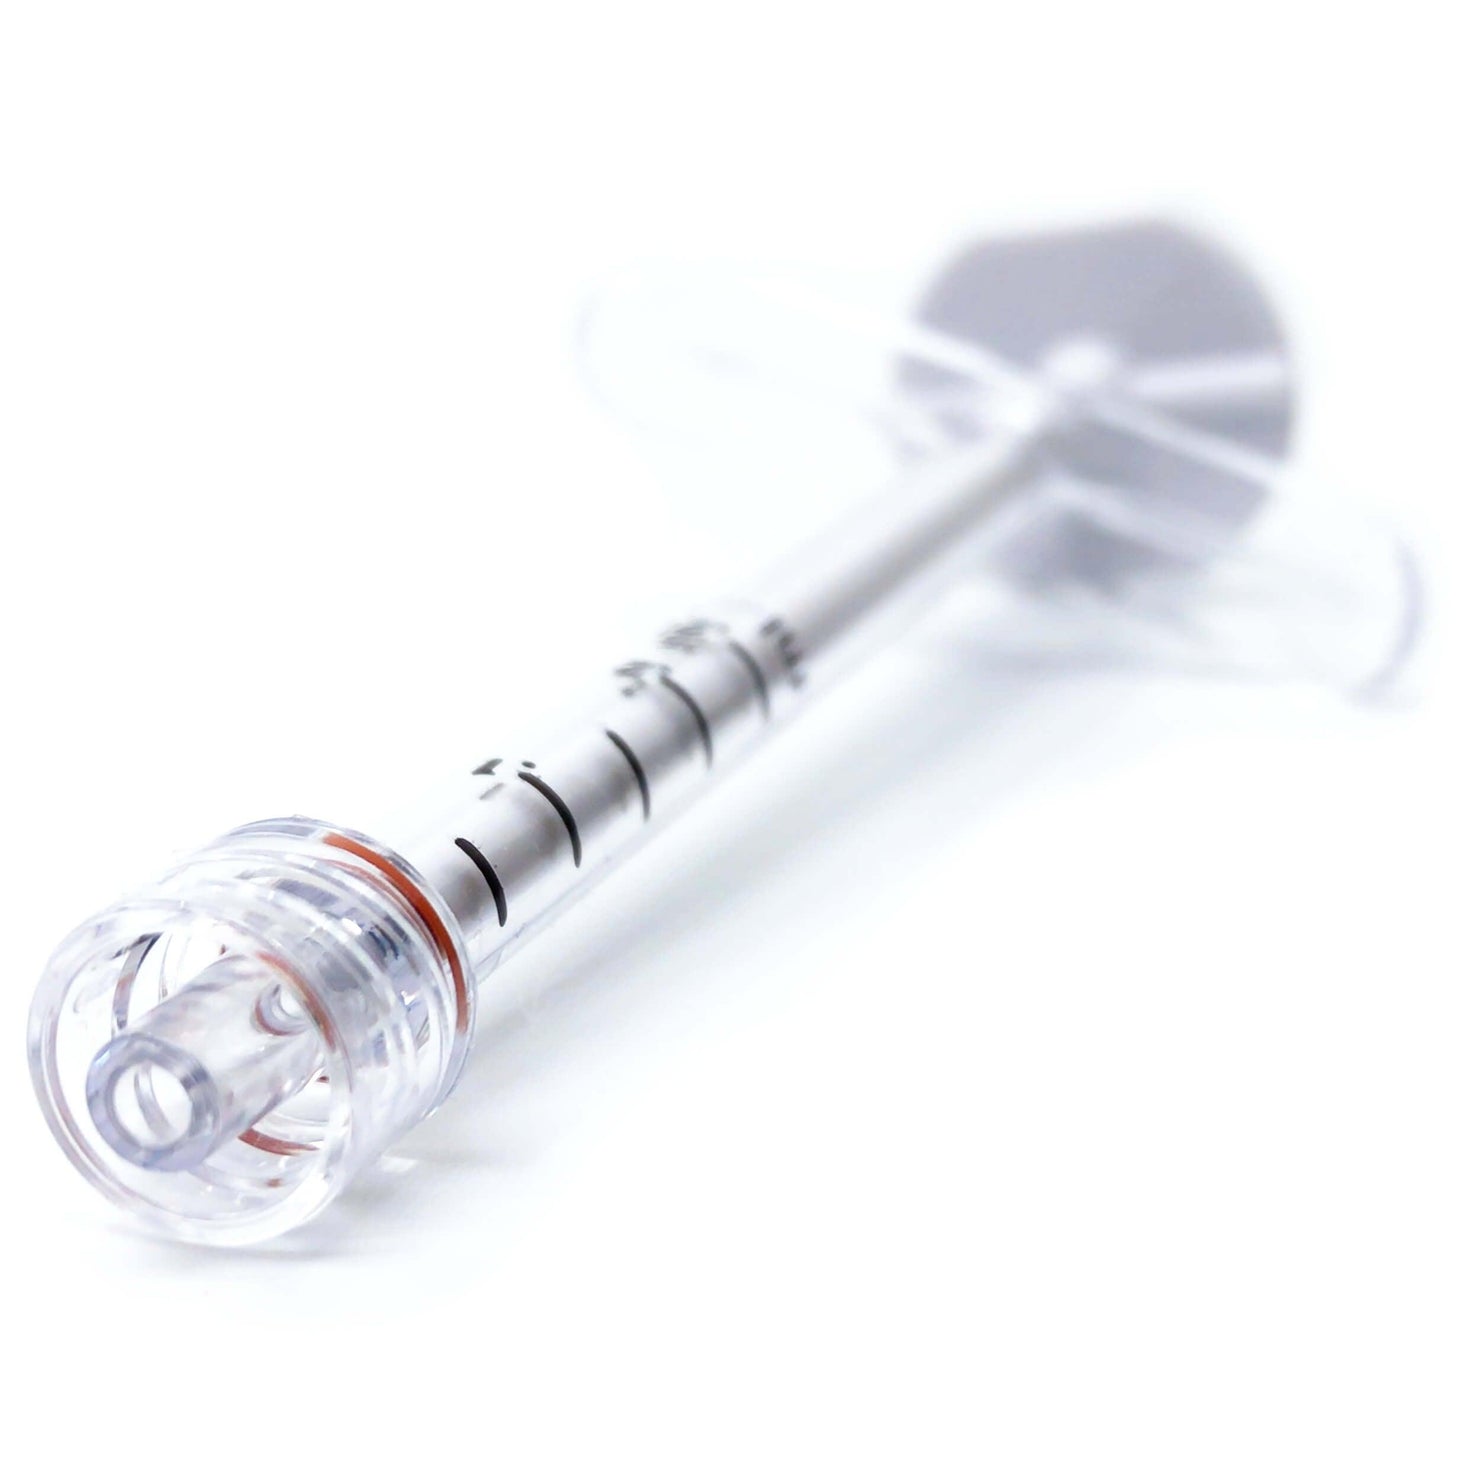 https://us.ivfstore.com/cdn/shop/products/Embryo-Transfer-syringe-ivf-tip.jpg?v=1569137444&width=1480